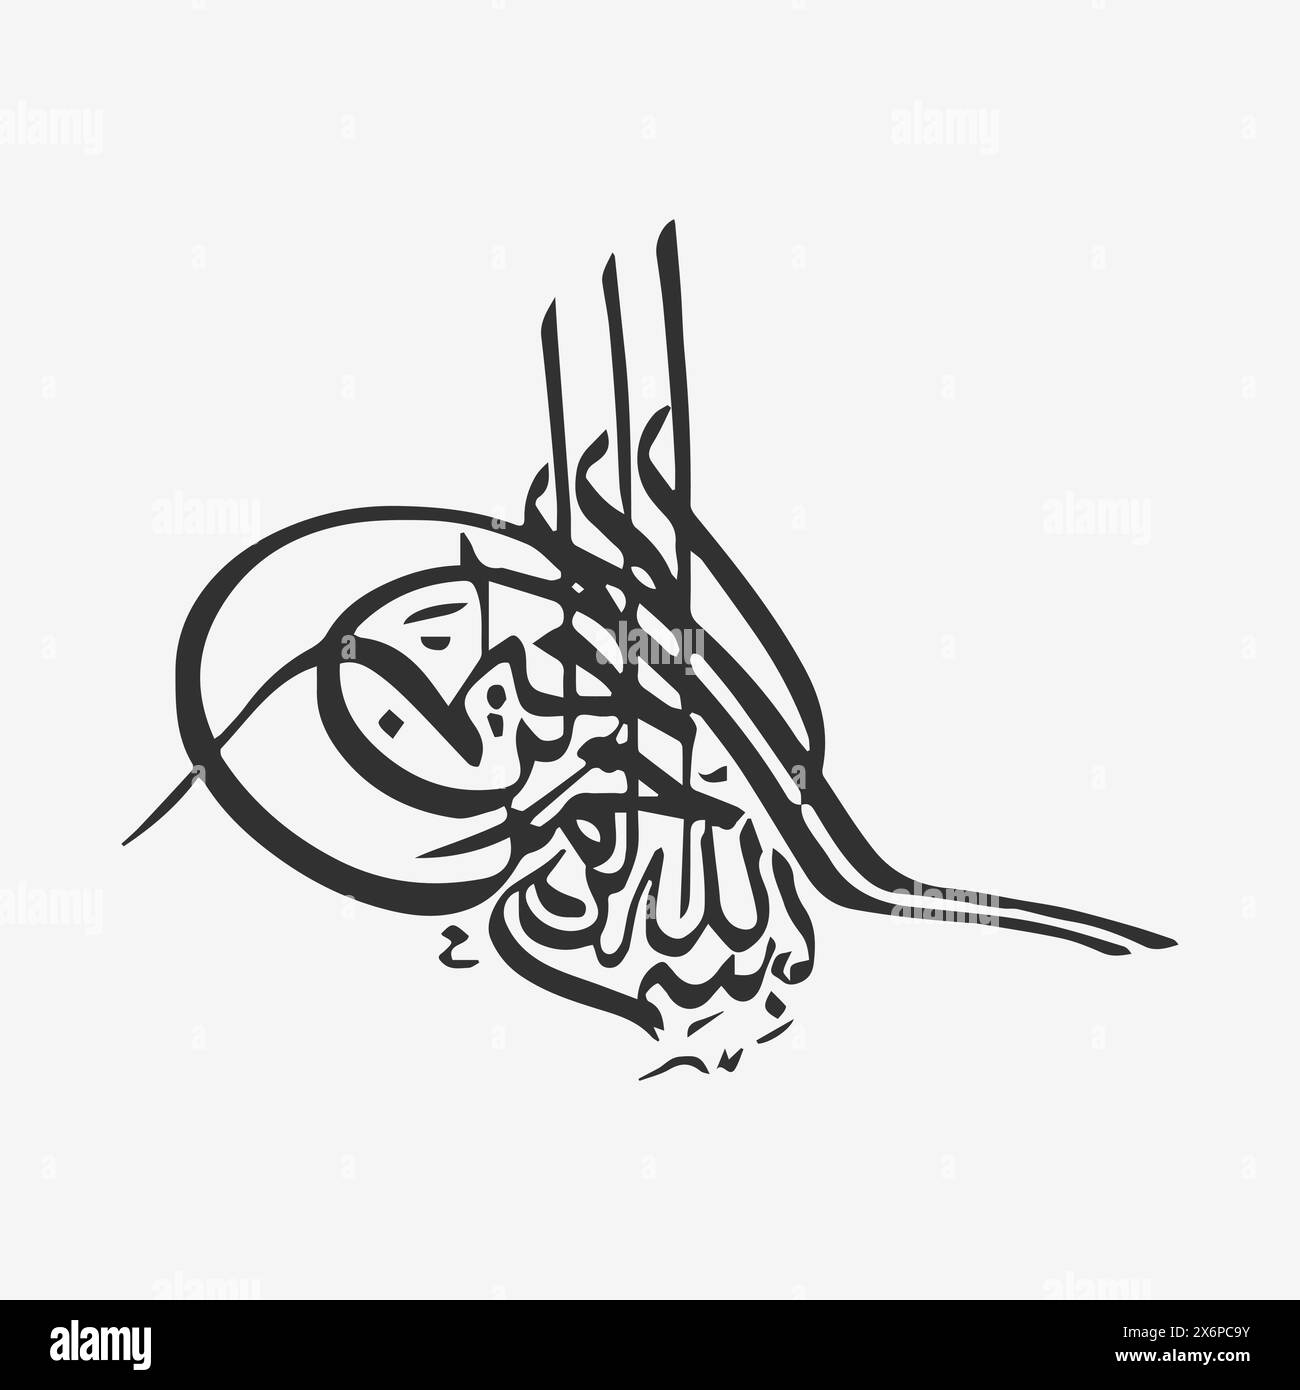 Calligraphy Vector Illustrations: Design eleganti per l'espressione artistica e culturale Illustrazione Vettoriale